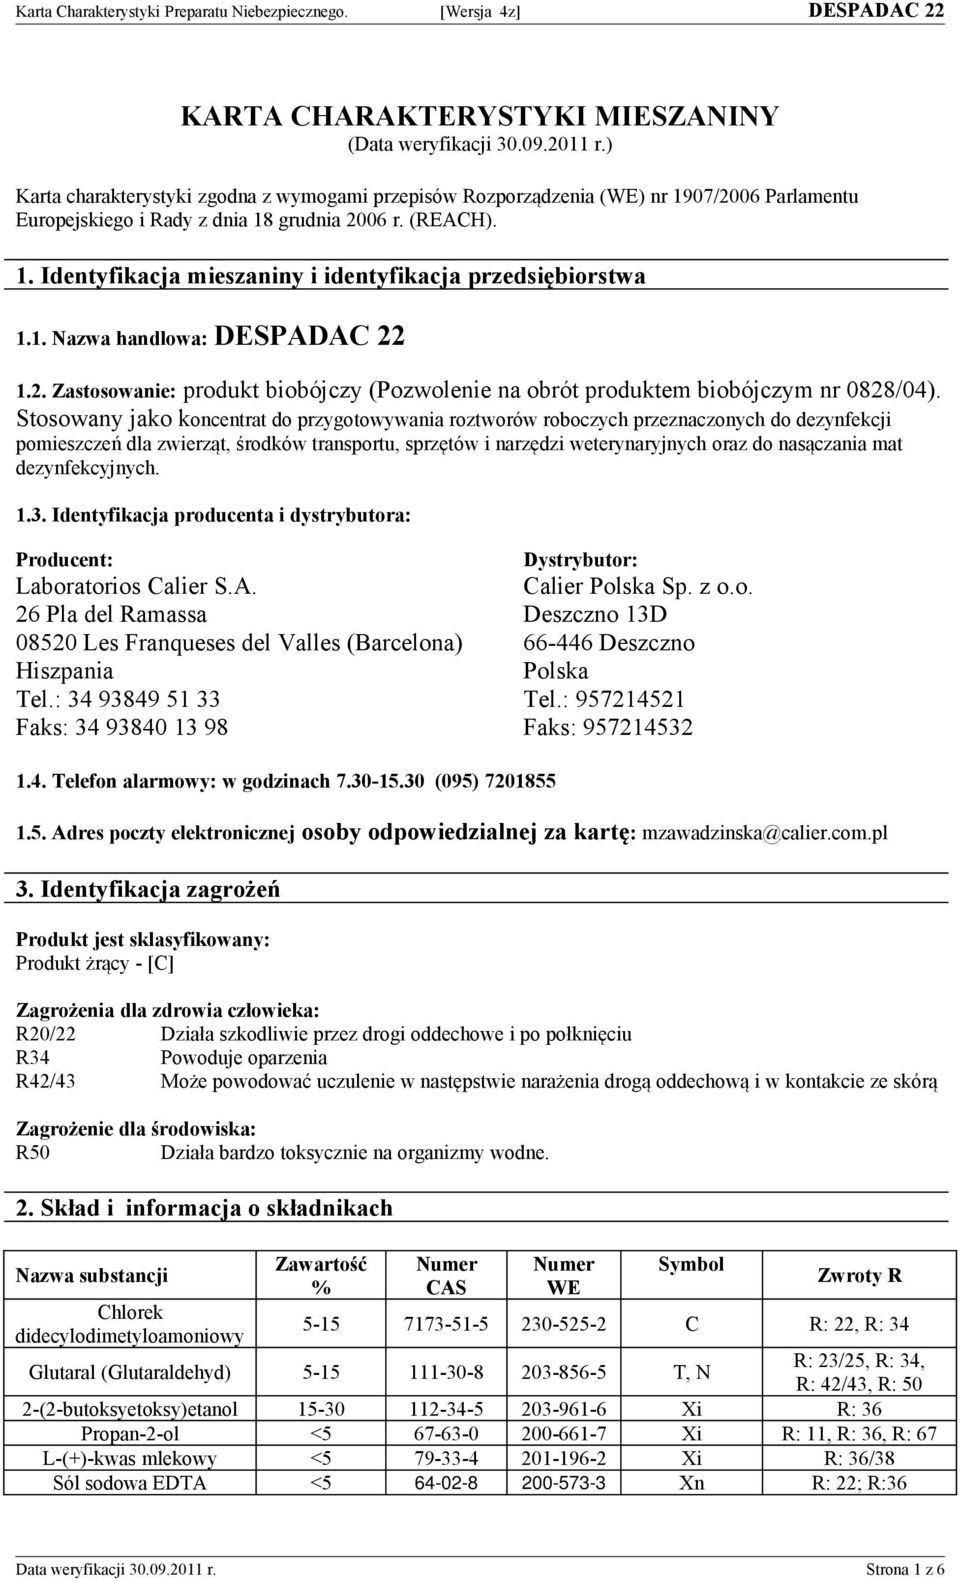 1. Nazwa handlowa: DESPADAC 22 1.2. Zastosowanie: produkt biobójczy (Pozwolenie na obrót produktem biobójczym nr 02/04).